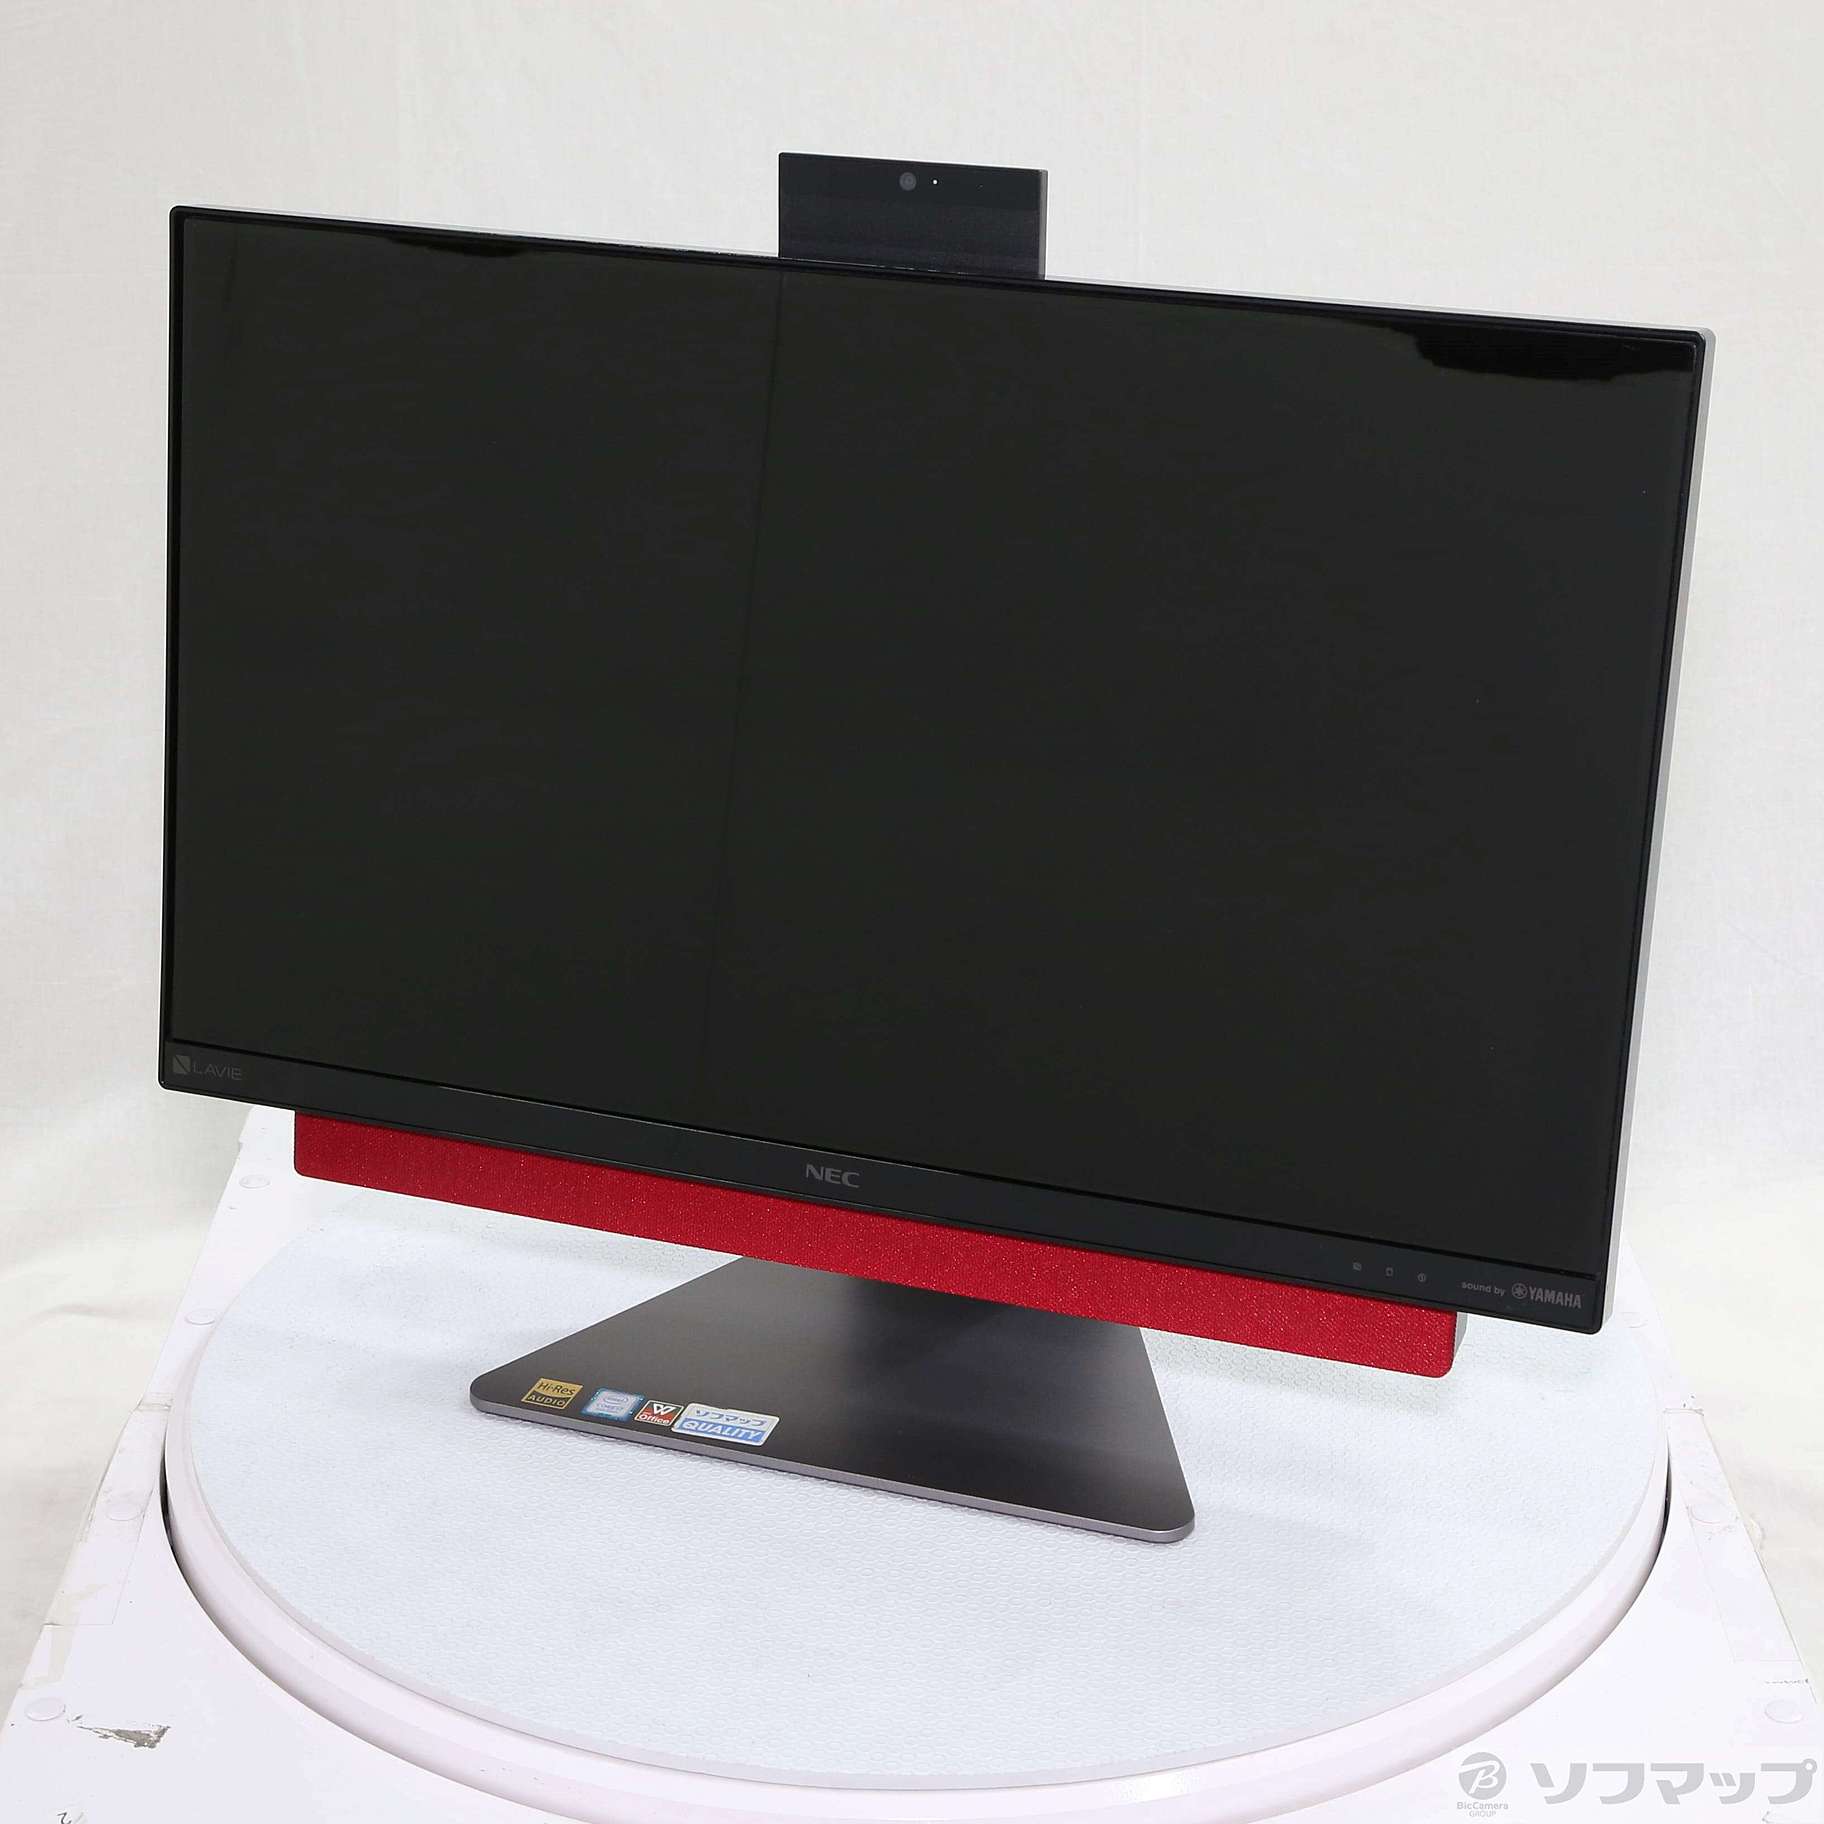 (中古)NEC LAVIE Desk All-in-one DA770/KAR PC-DA770KAR メタルレッド(247-ud)